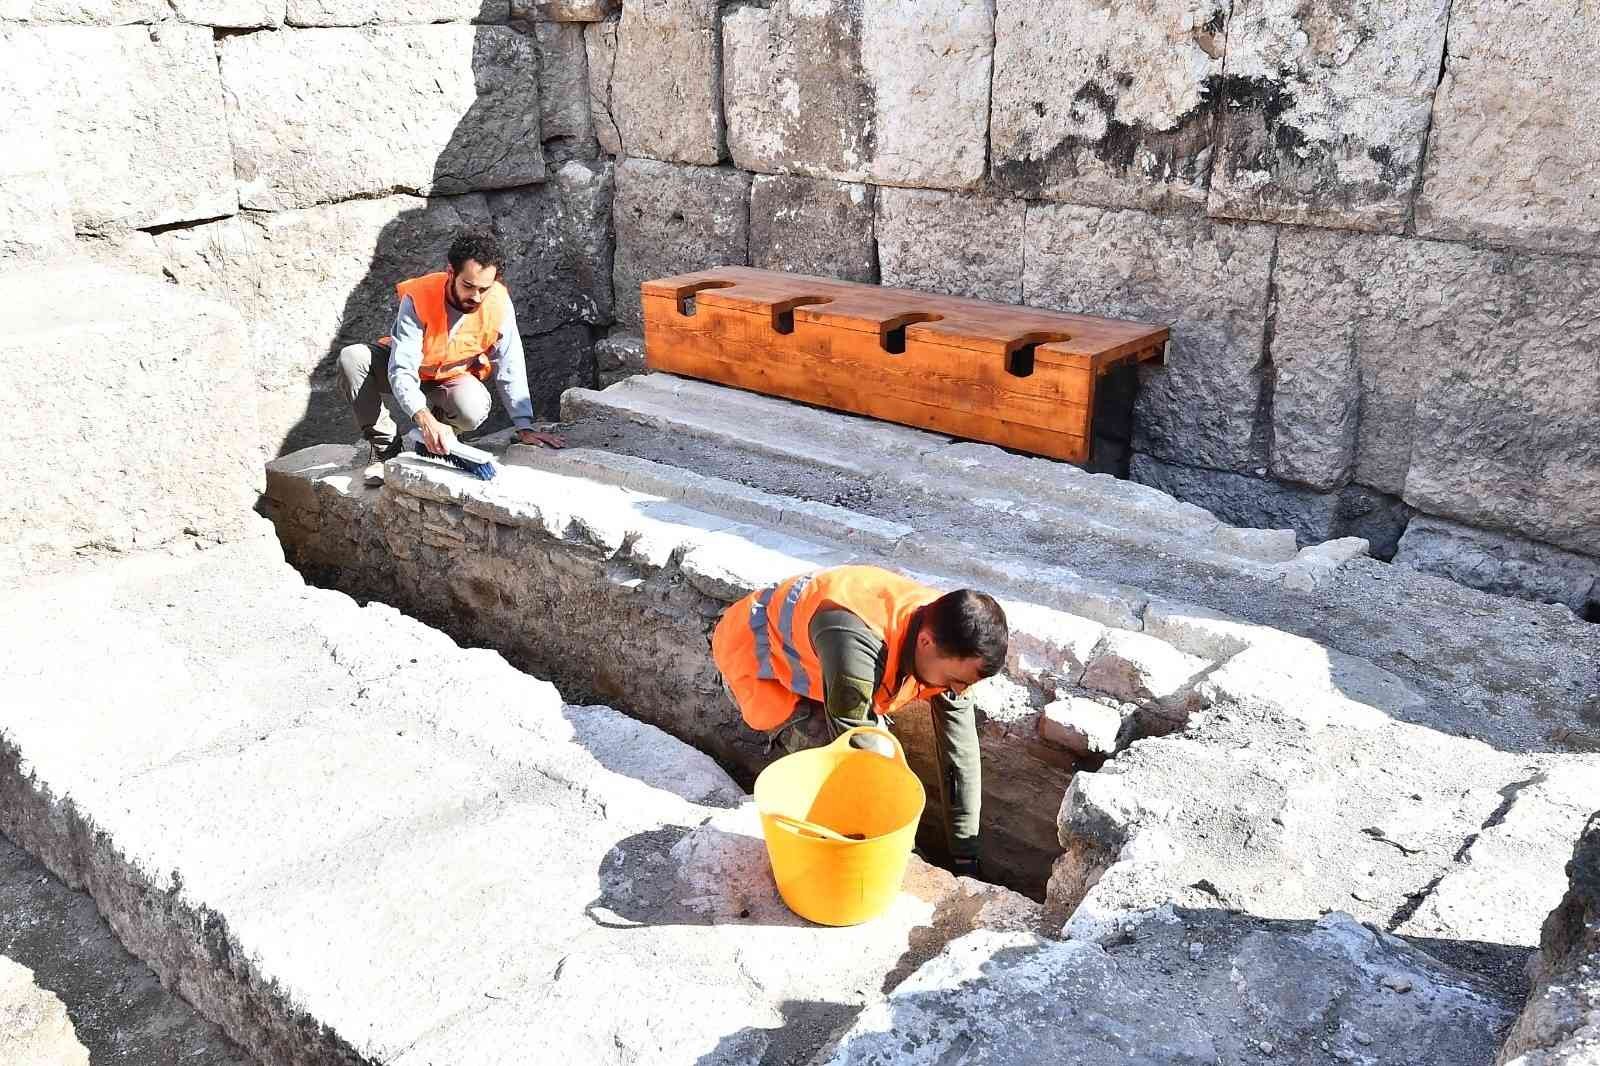 İzmir’de heyecanlandıran buluntu: Antik tiyatro kulisinde ilk antik tuvalet #izmir